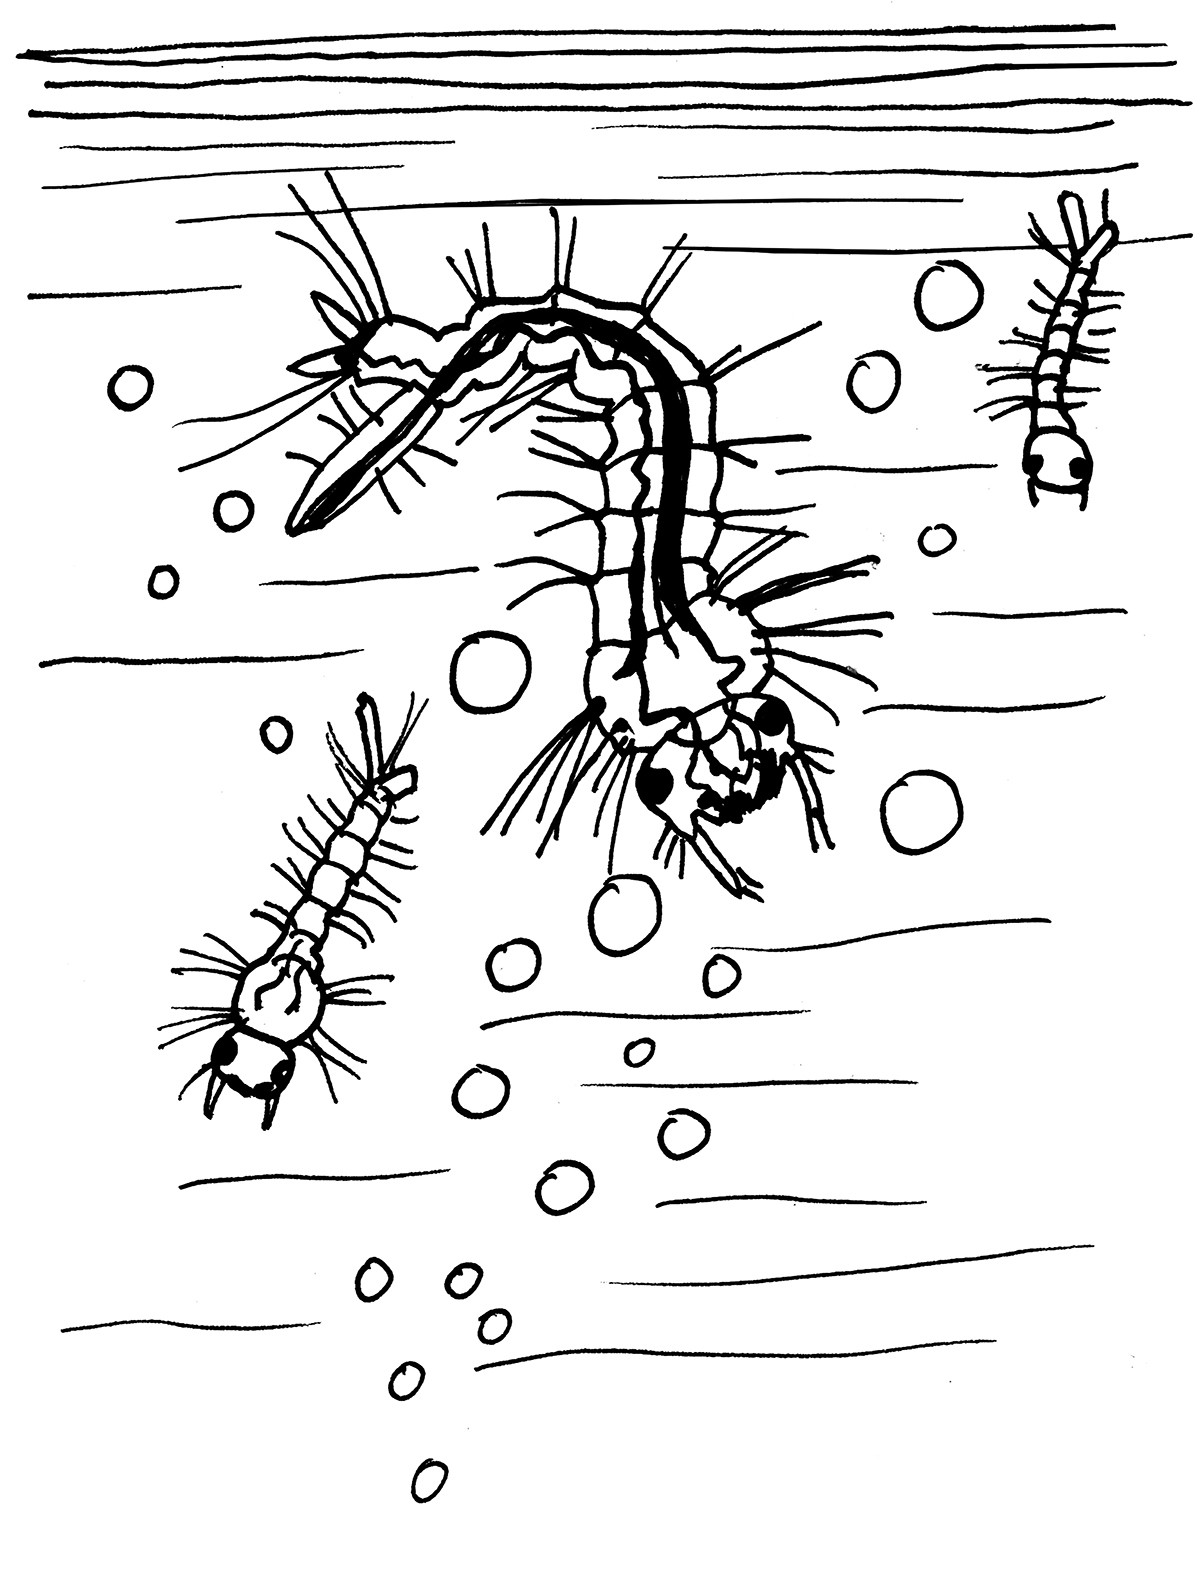 Trzy wodne organizmy ze szczękami, wydłużonymi wieloczłonowymi korpusami i licznymi odnóżami unoszą się w toni wśród bąbelków.